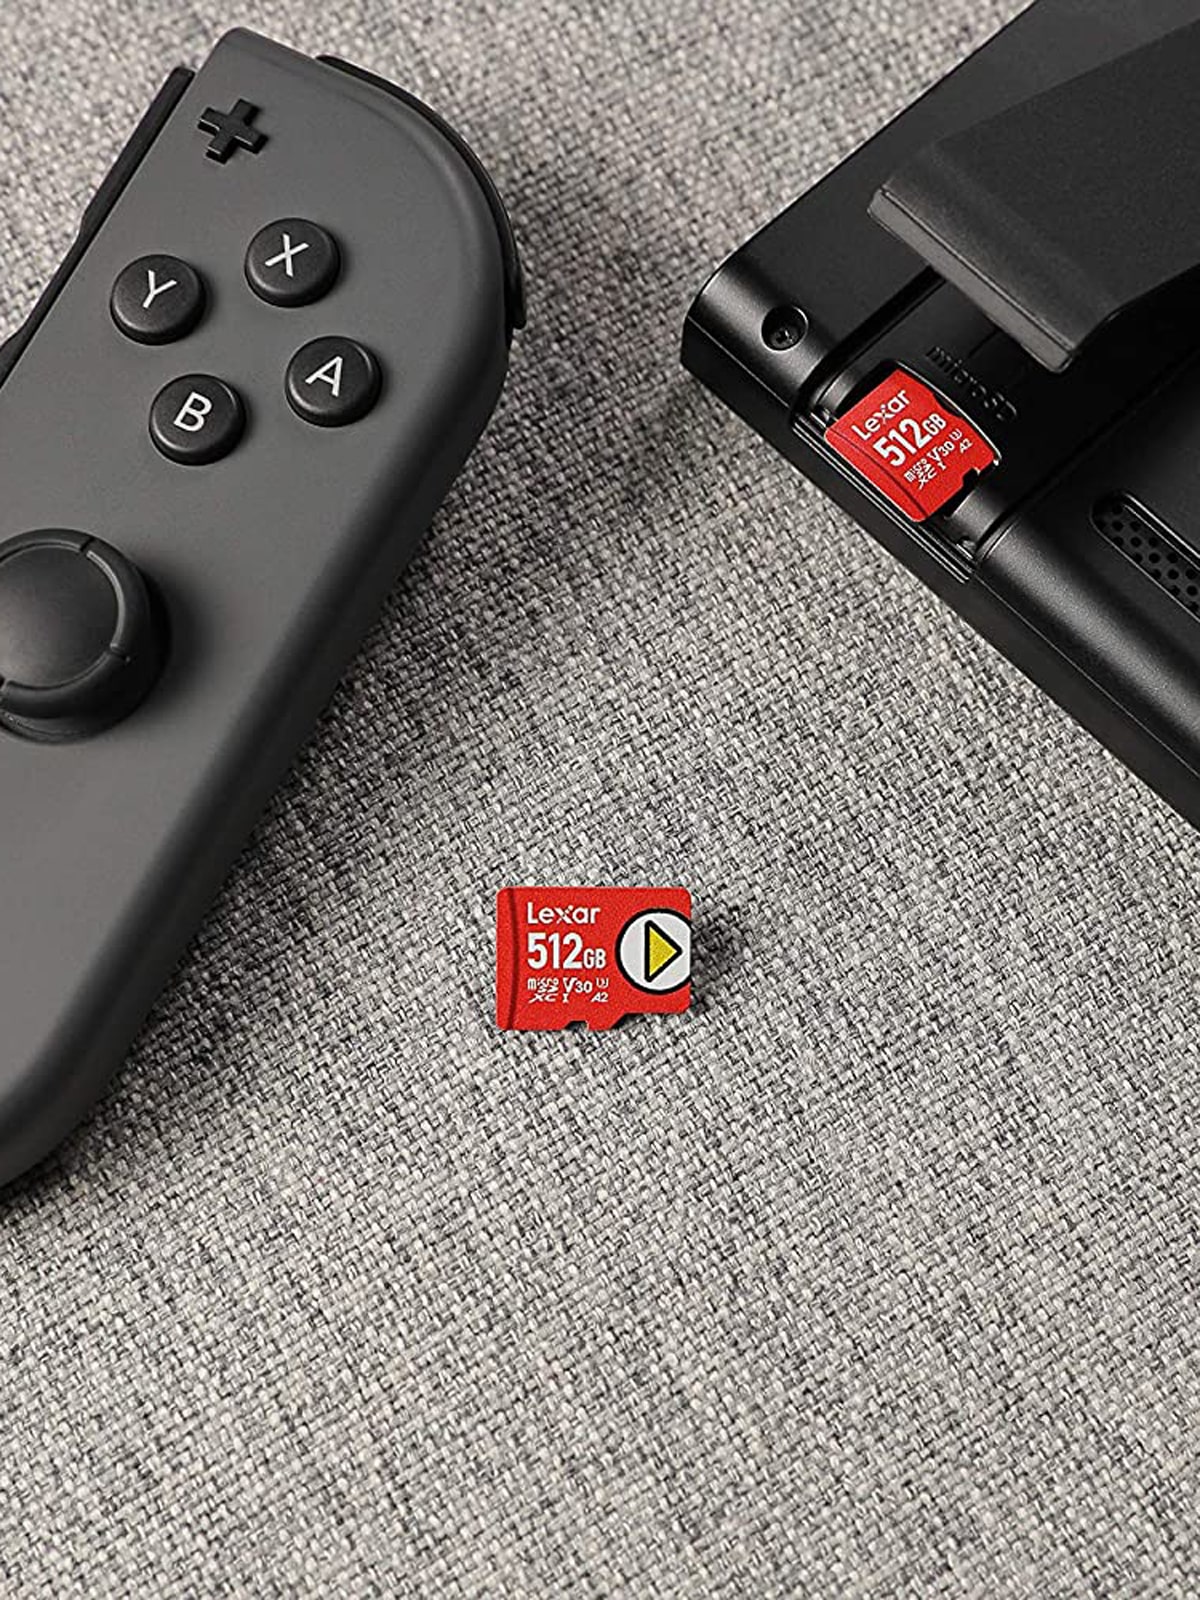 Les cartes microSD compatibles avec la Nintendo Switch